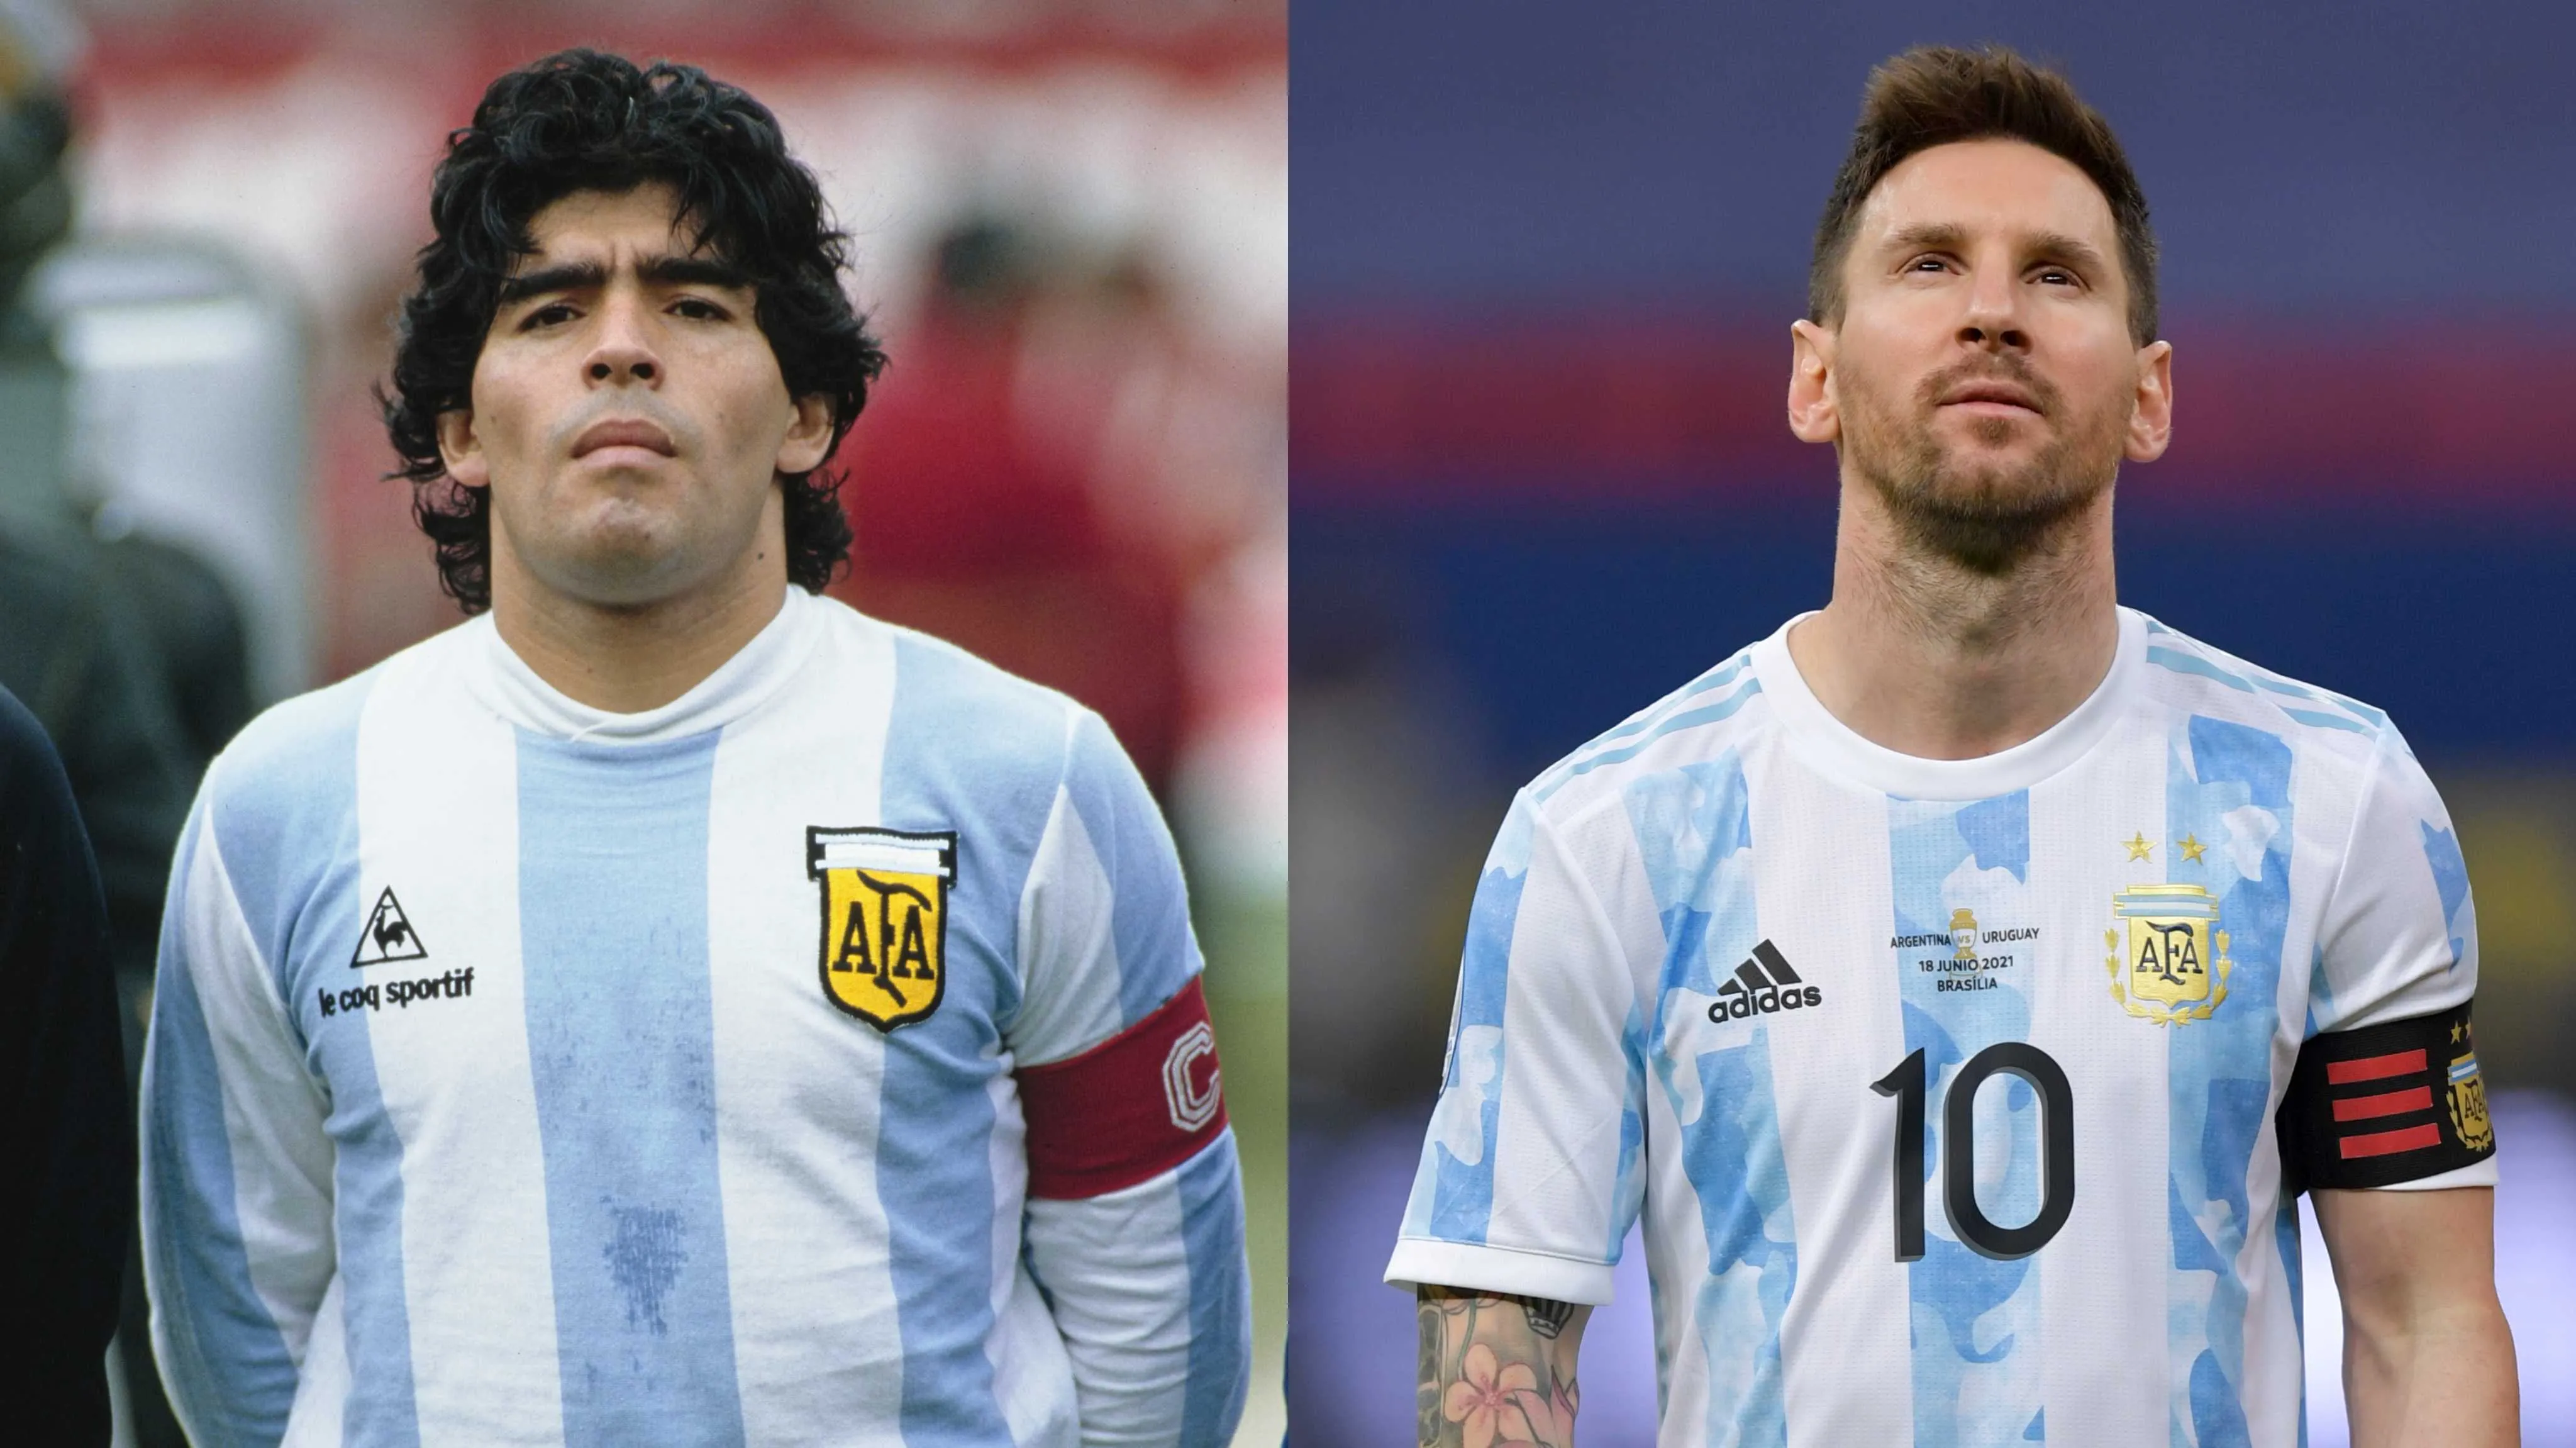  La particular foto de Lionel Messi que se volvió viral por su parecido con una imagen de Maradona: “Es D10S”